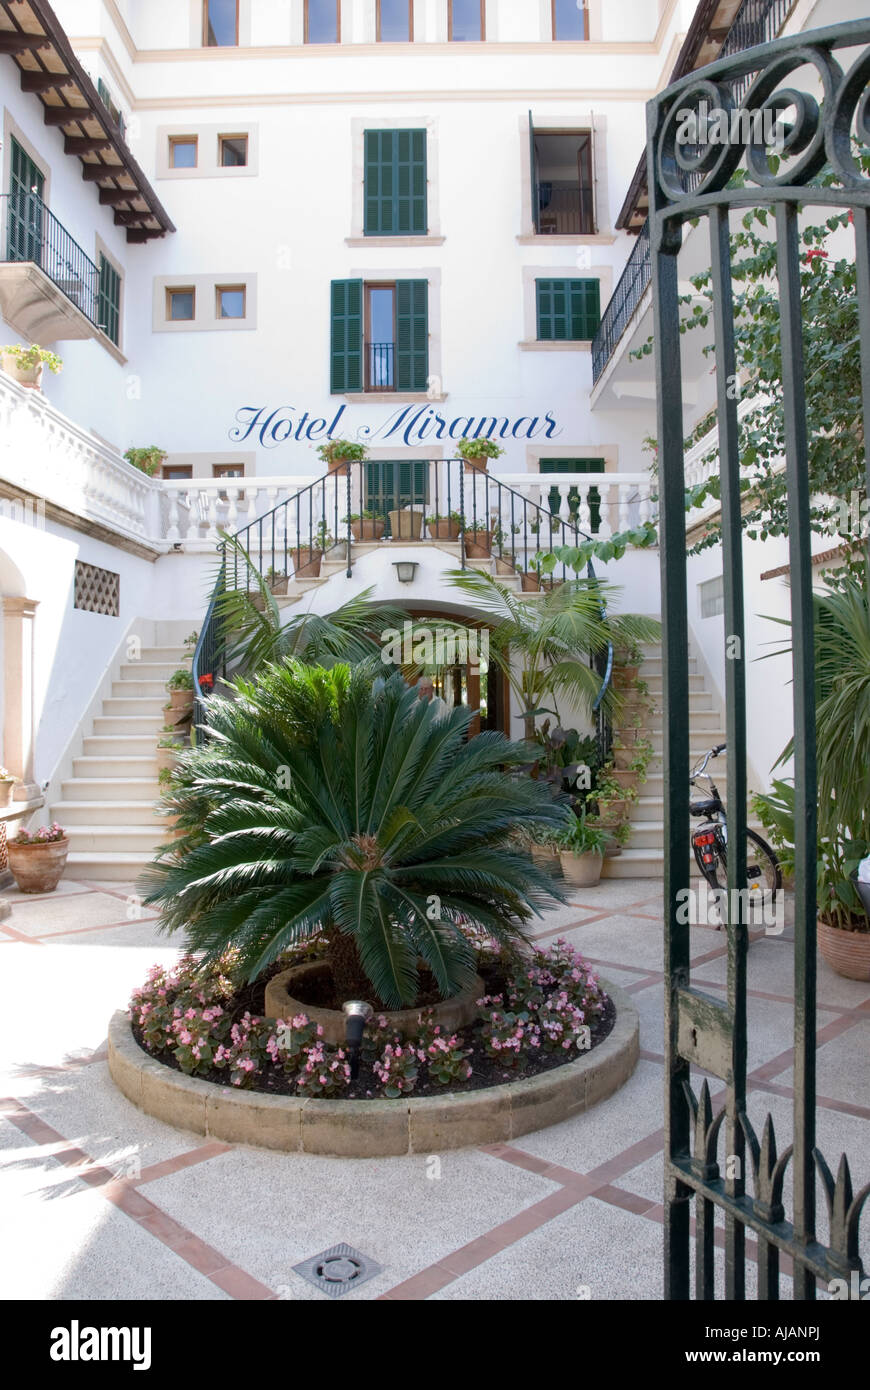 Hotel Miramar, Puerto Pollensa, Majorca, garden entrance Stock Photo - Alamy